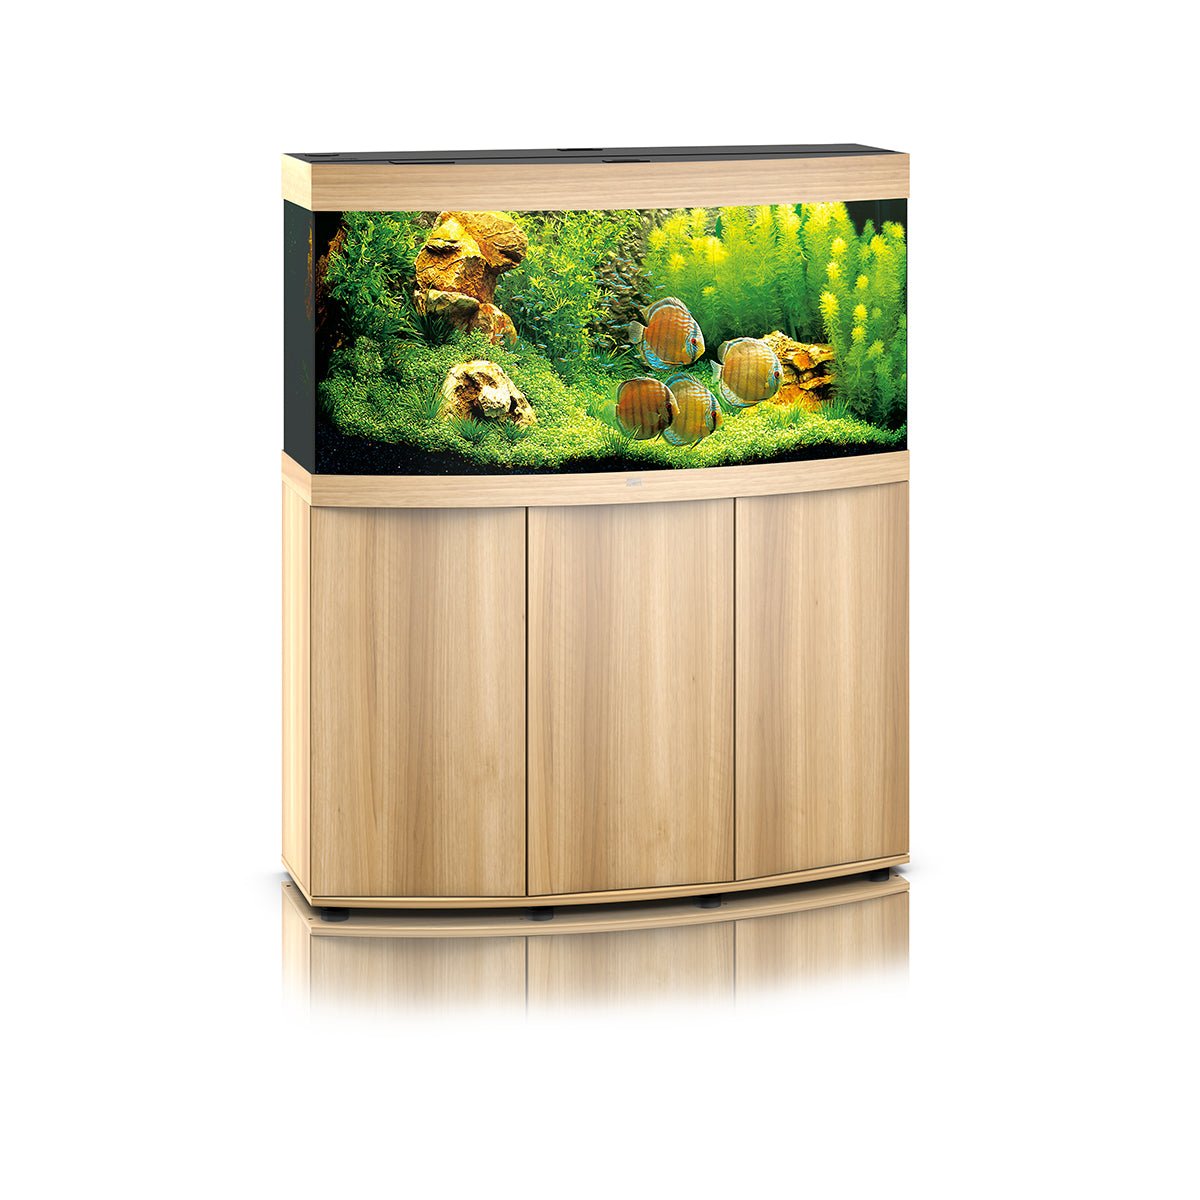 Juwel Vision 260 LED Aquarium and Cabinet (Light Wood) - Charterhouse Aquatics